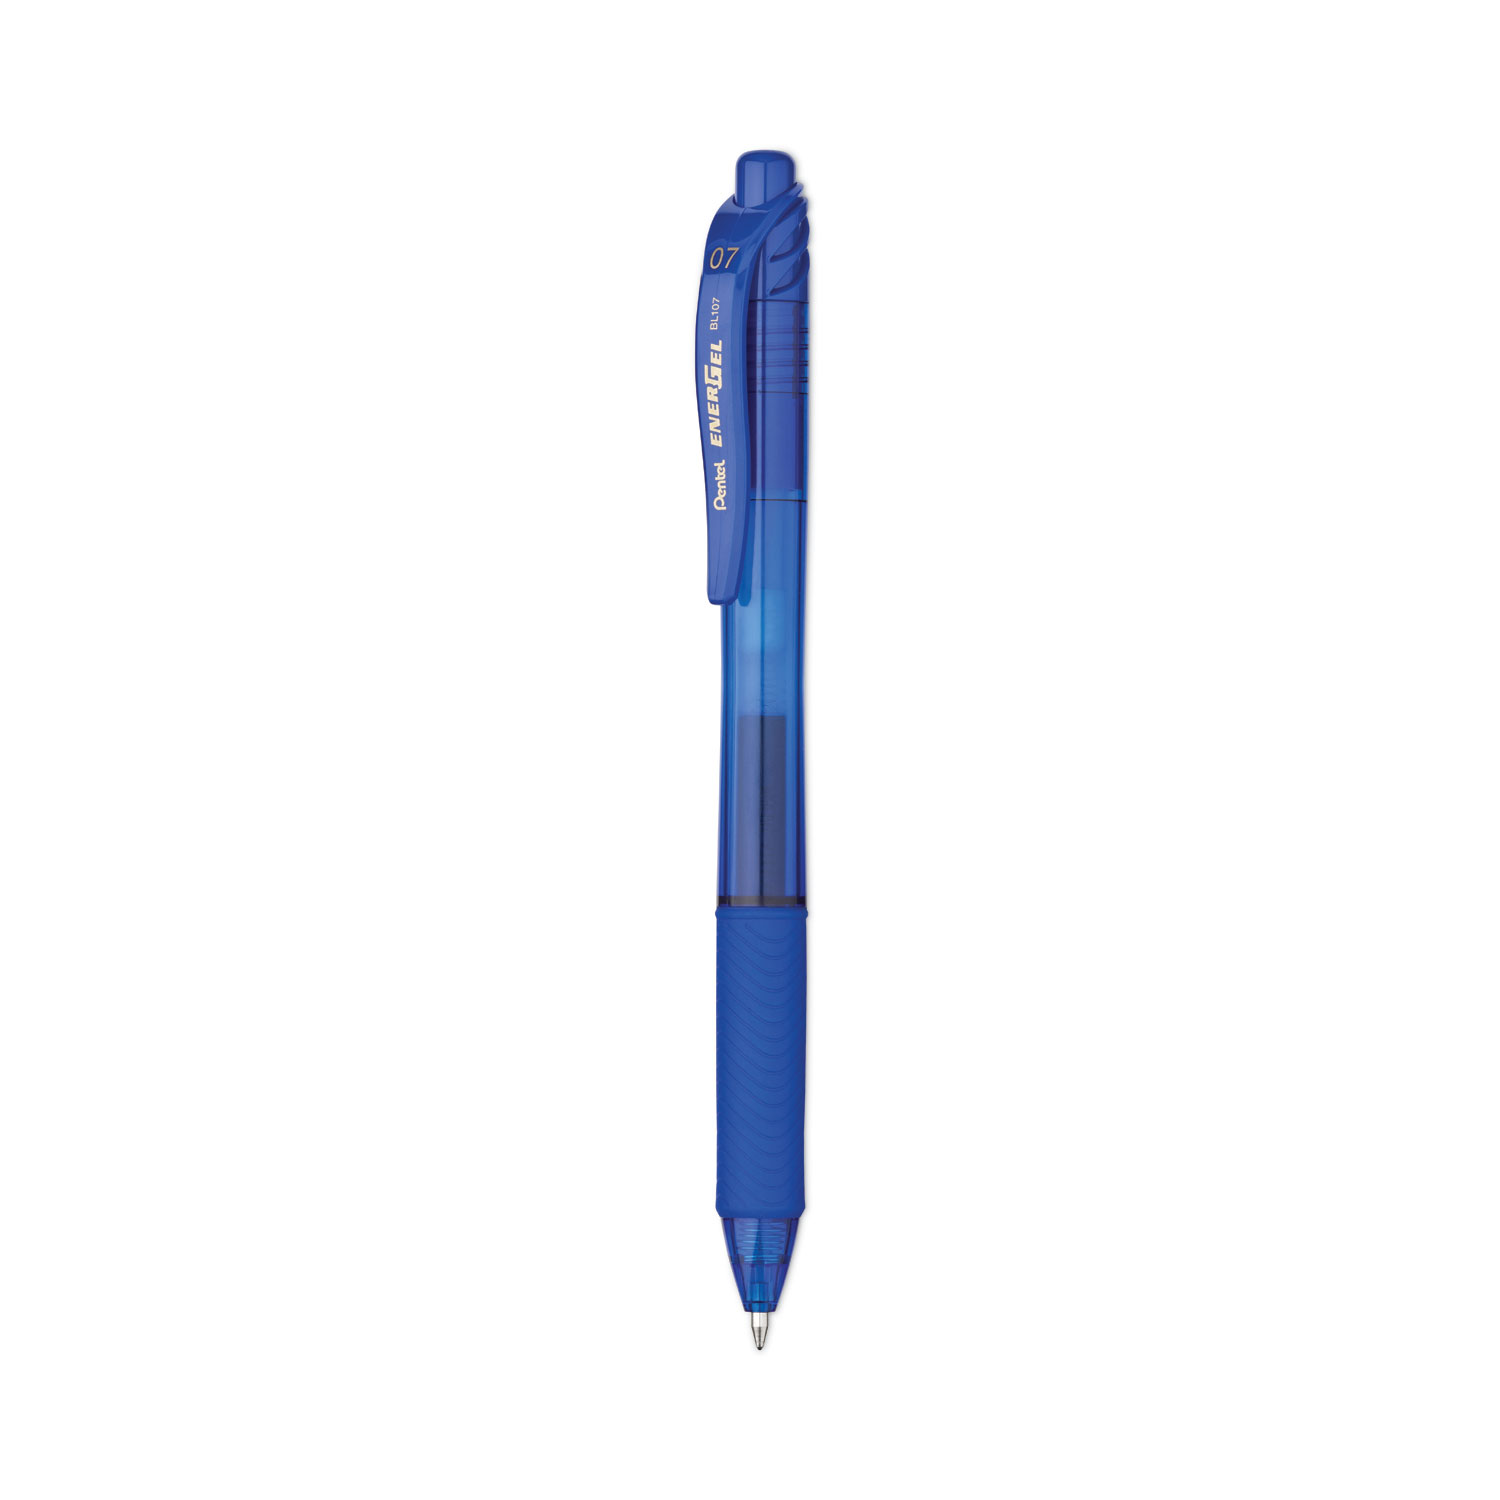 Pentel Blue Fast Drying Gel Pen Set